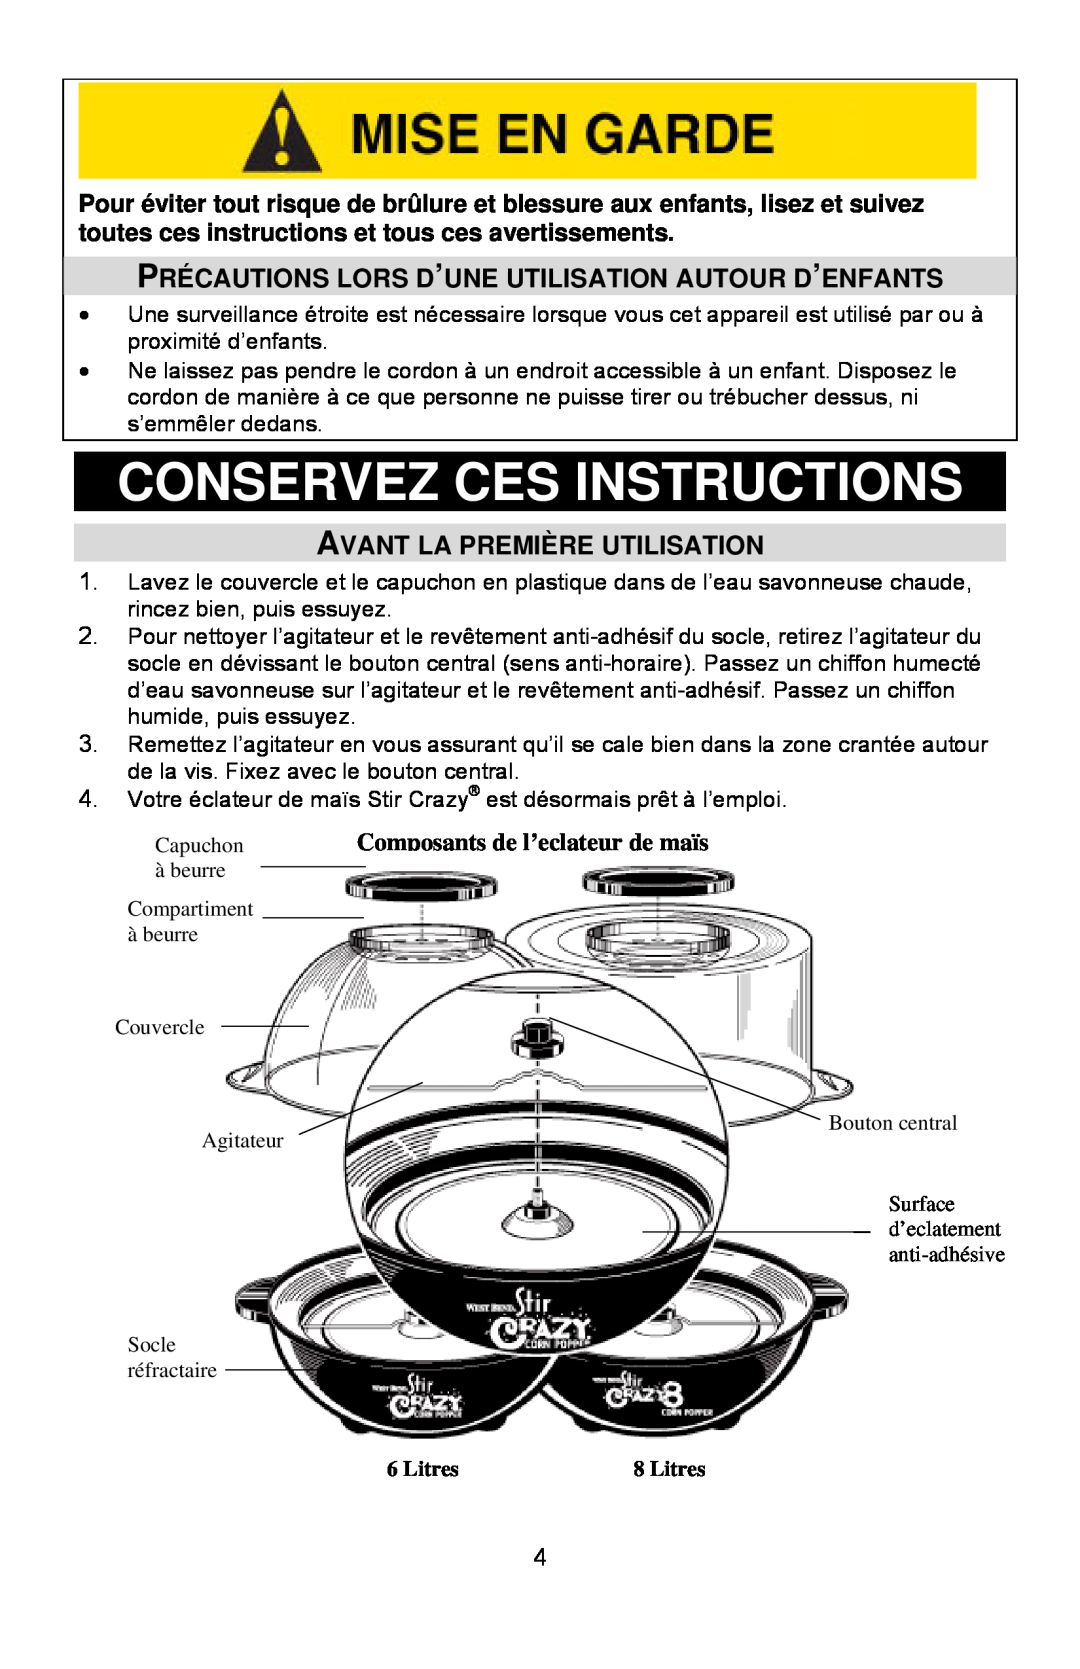 West Bend 82306, L5557B instruction manual Conservez Ces Instructions, Avant La Première Utilisation, Litres 